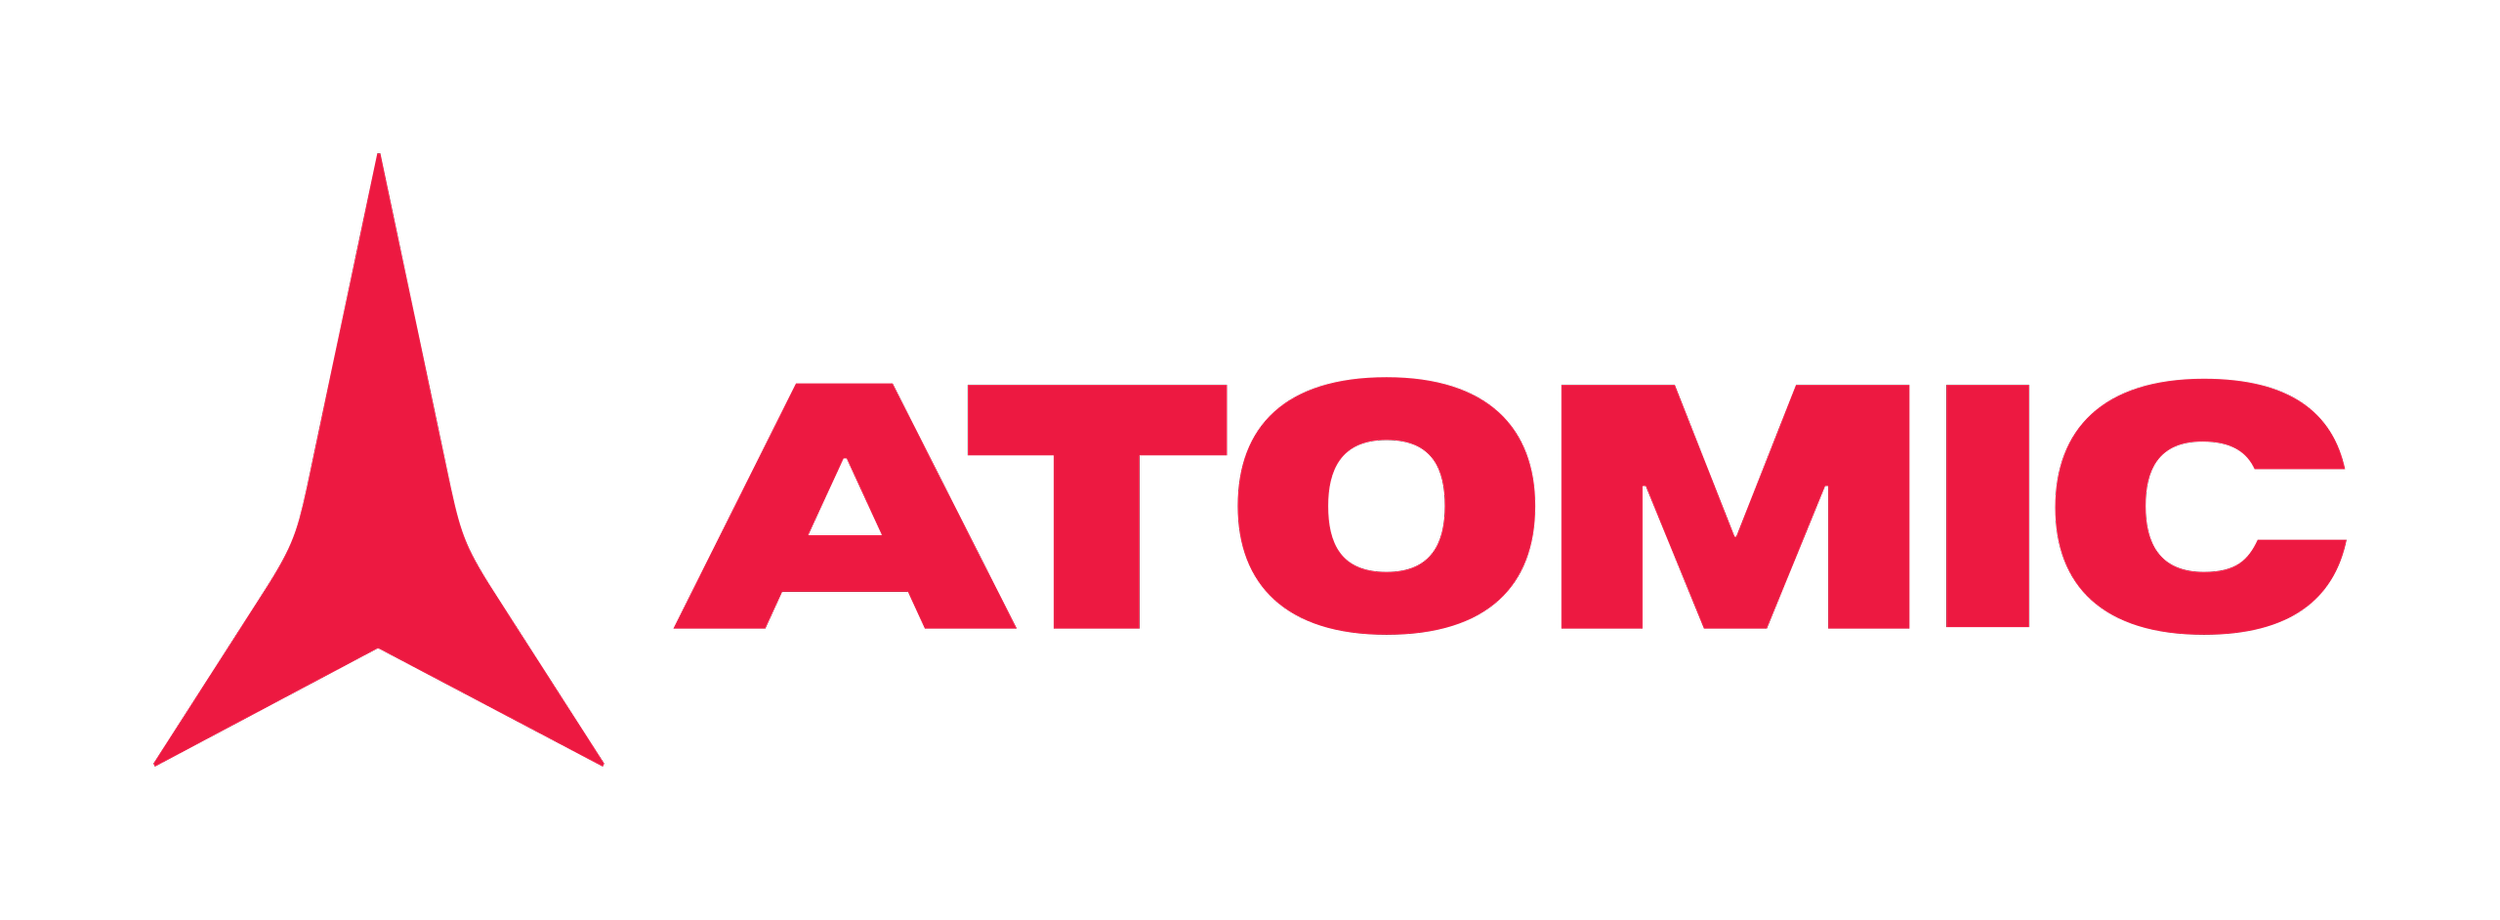 atomic logo.png